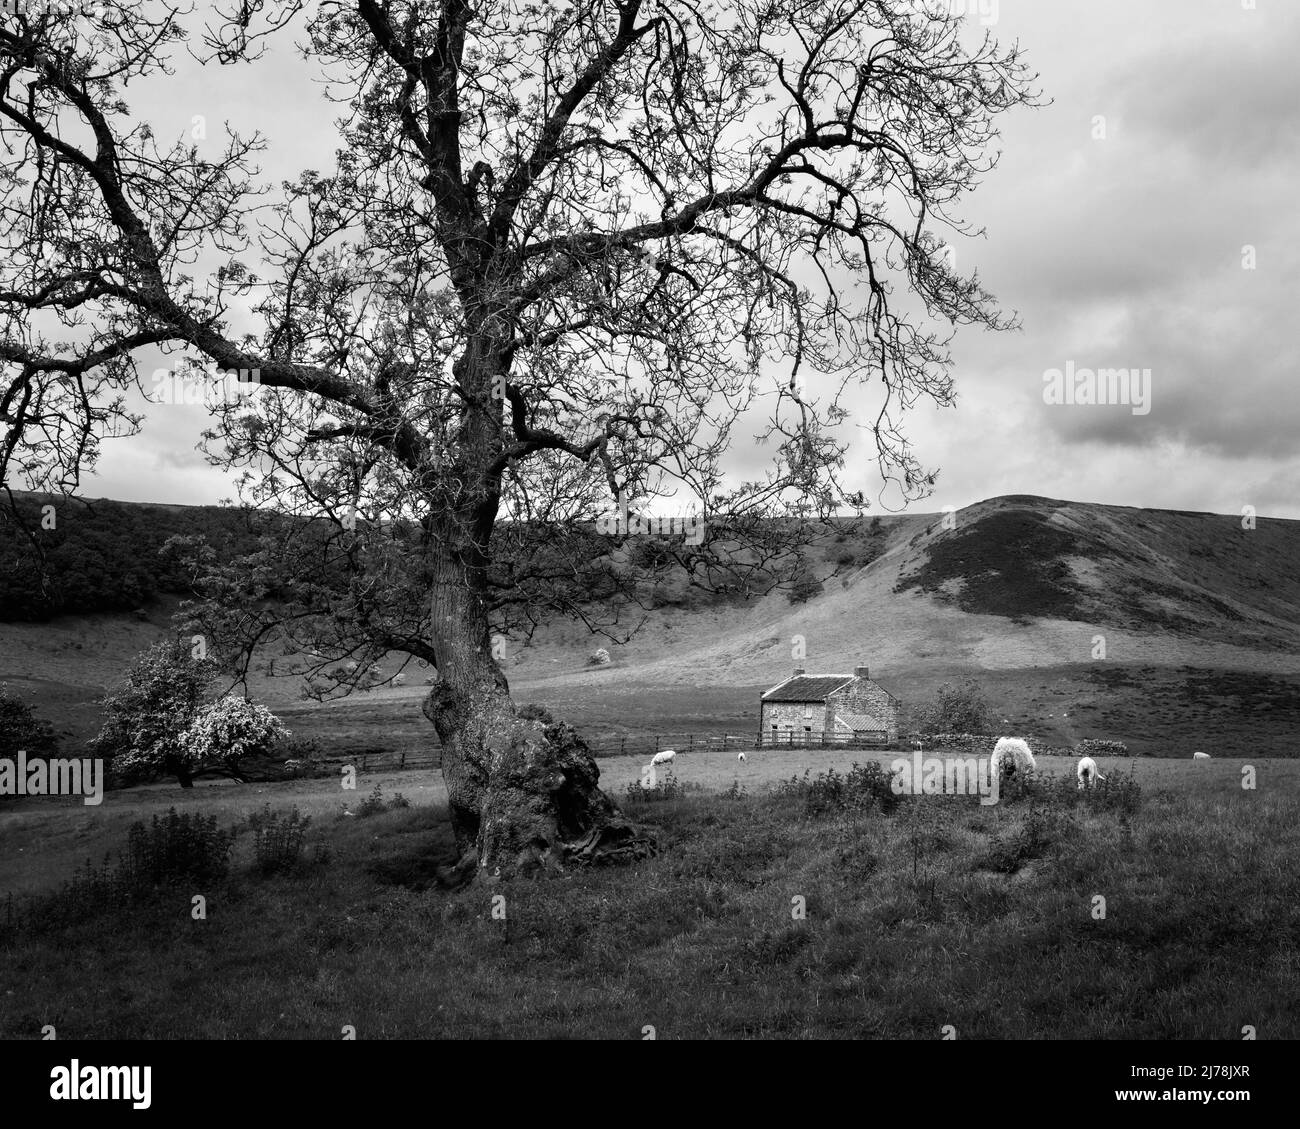 Agujero de Horcum, una depresión natural, con granja en desuso rodeada de árboles y praderas y paisaje bajo cielo nublado cerca de Goathland, Reino Unido. Foto de stock